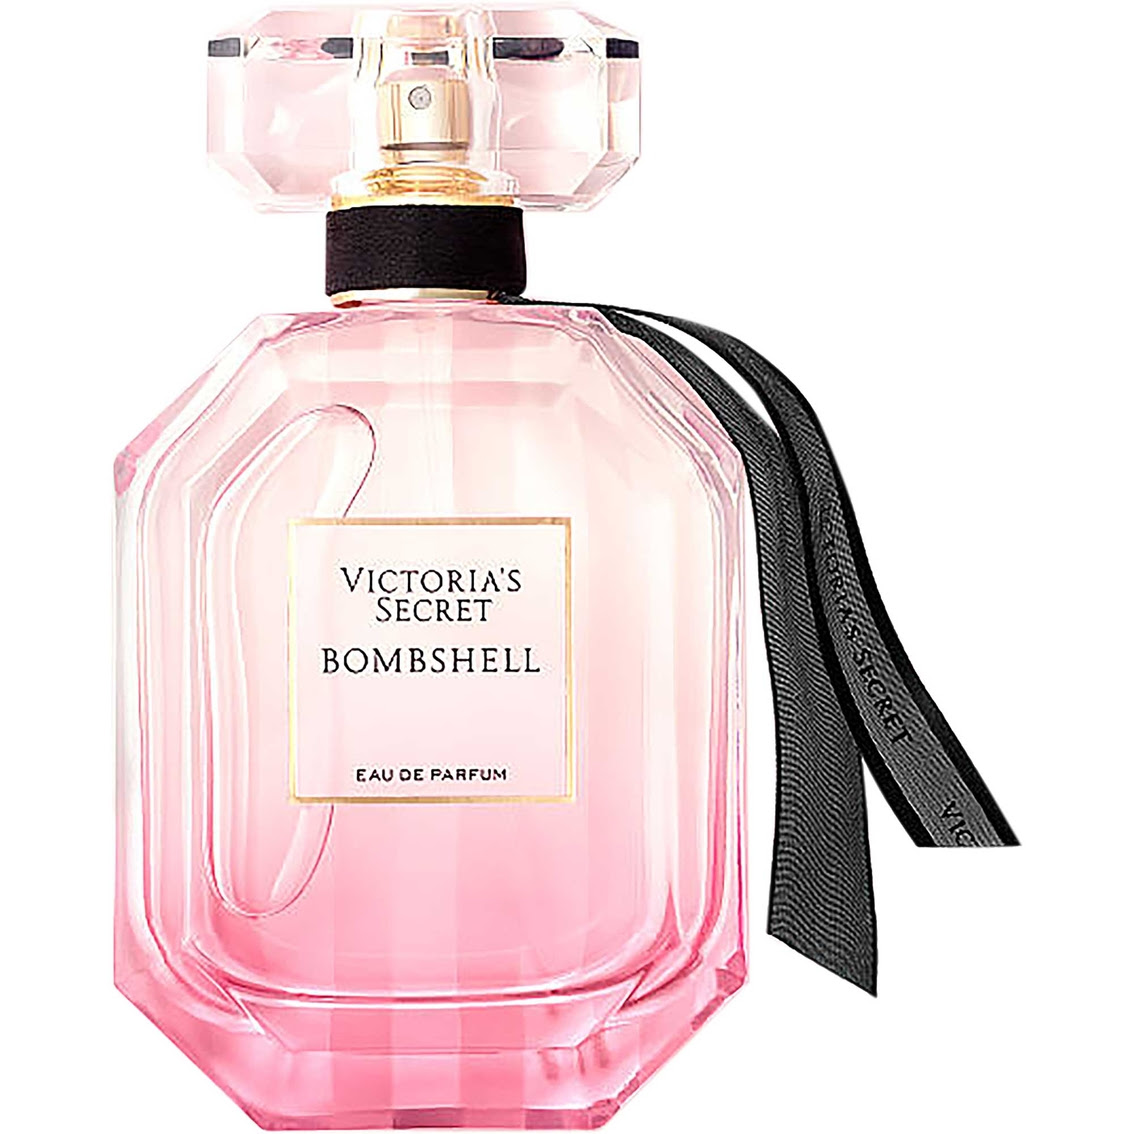 Victoria's Secret Bombshell Eau De Parfum Spray Women's Fragrances